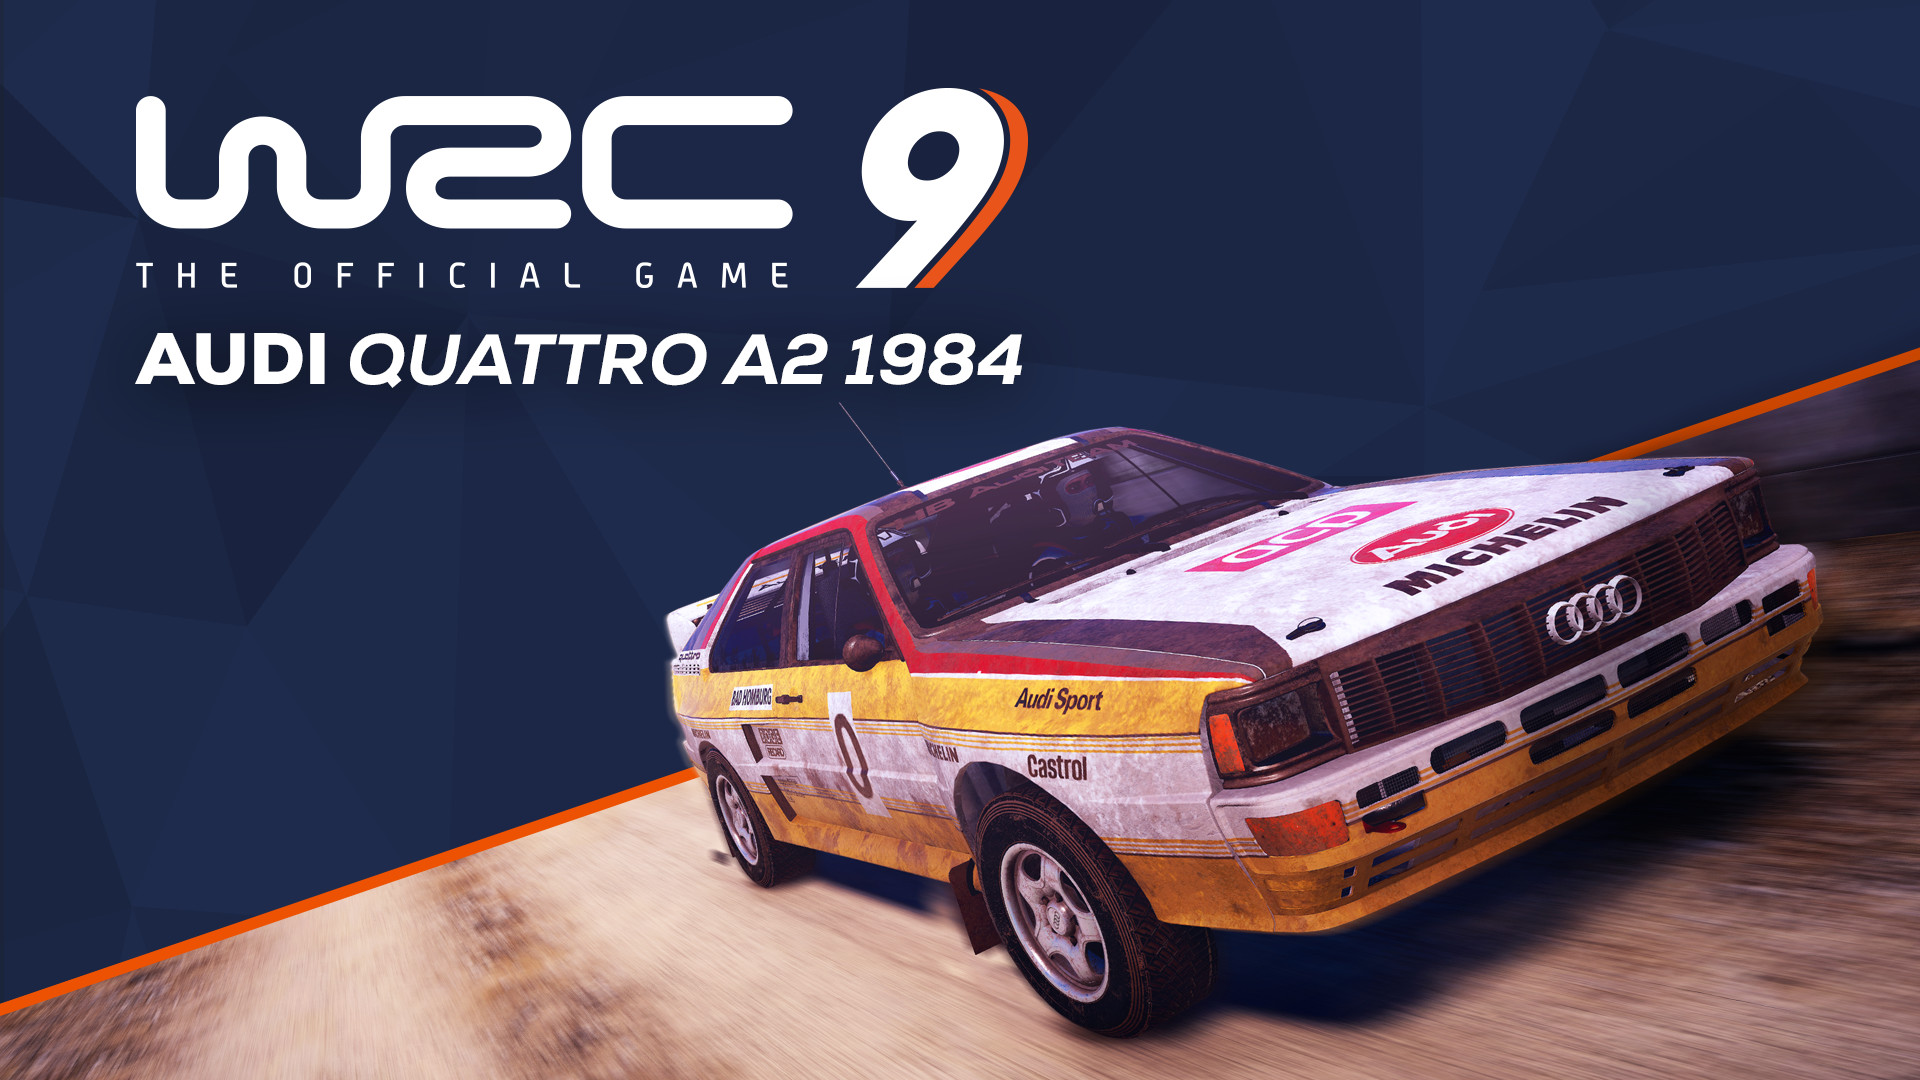 WRC 9 - Audi Quattro A2 1984 DLC Steam CD Key $1.83